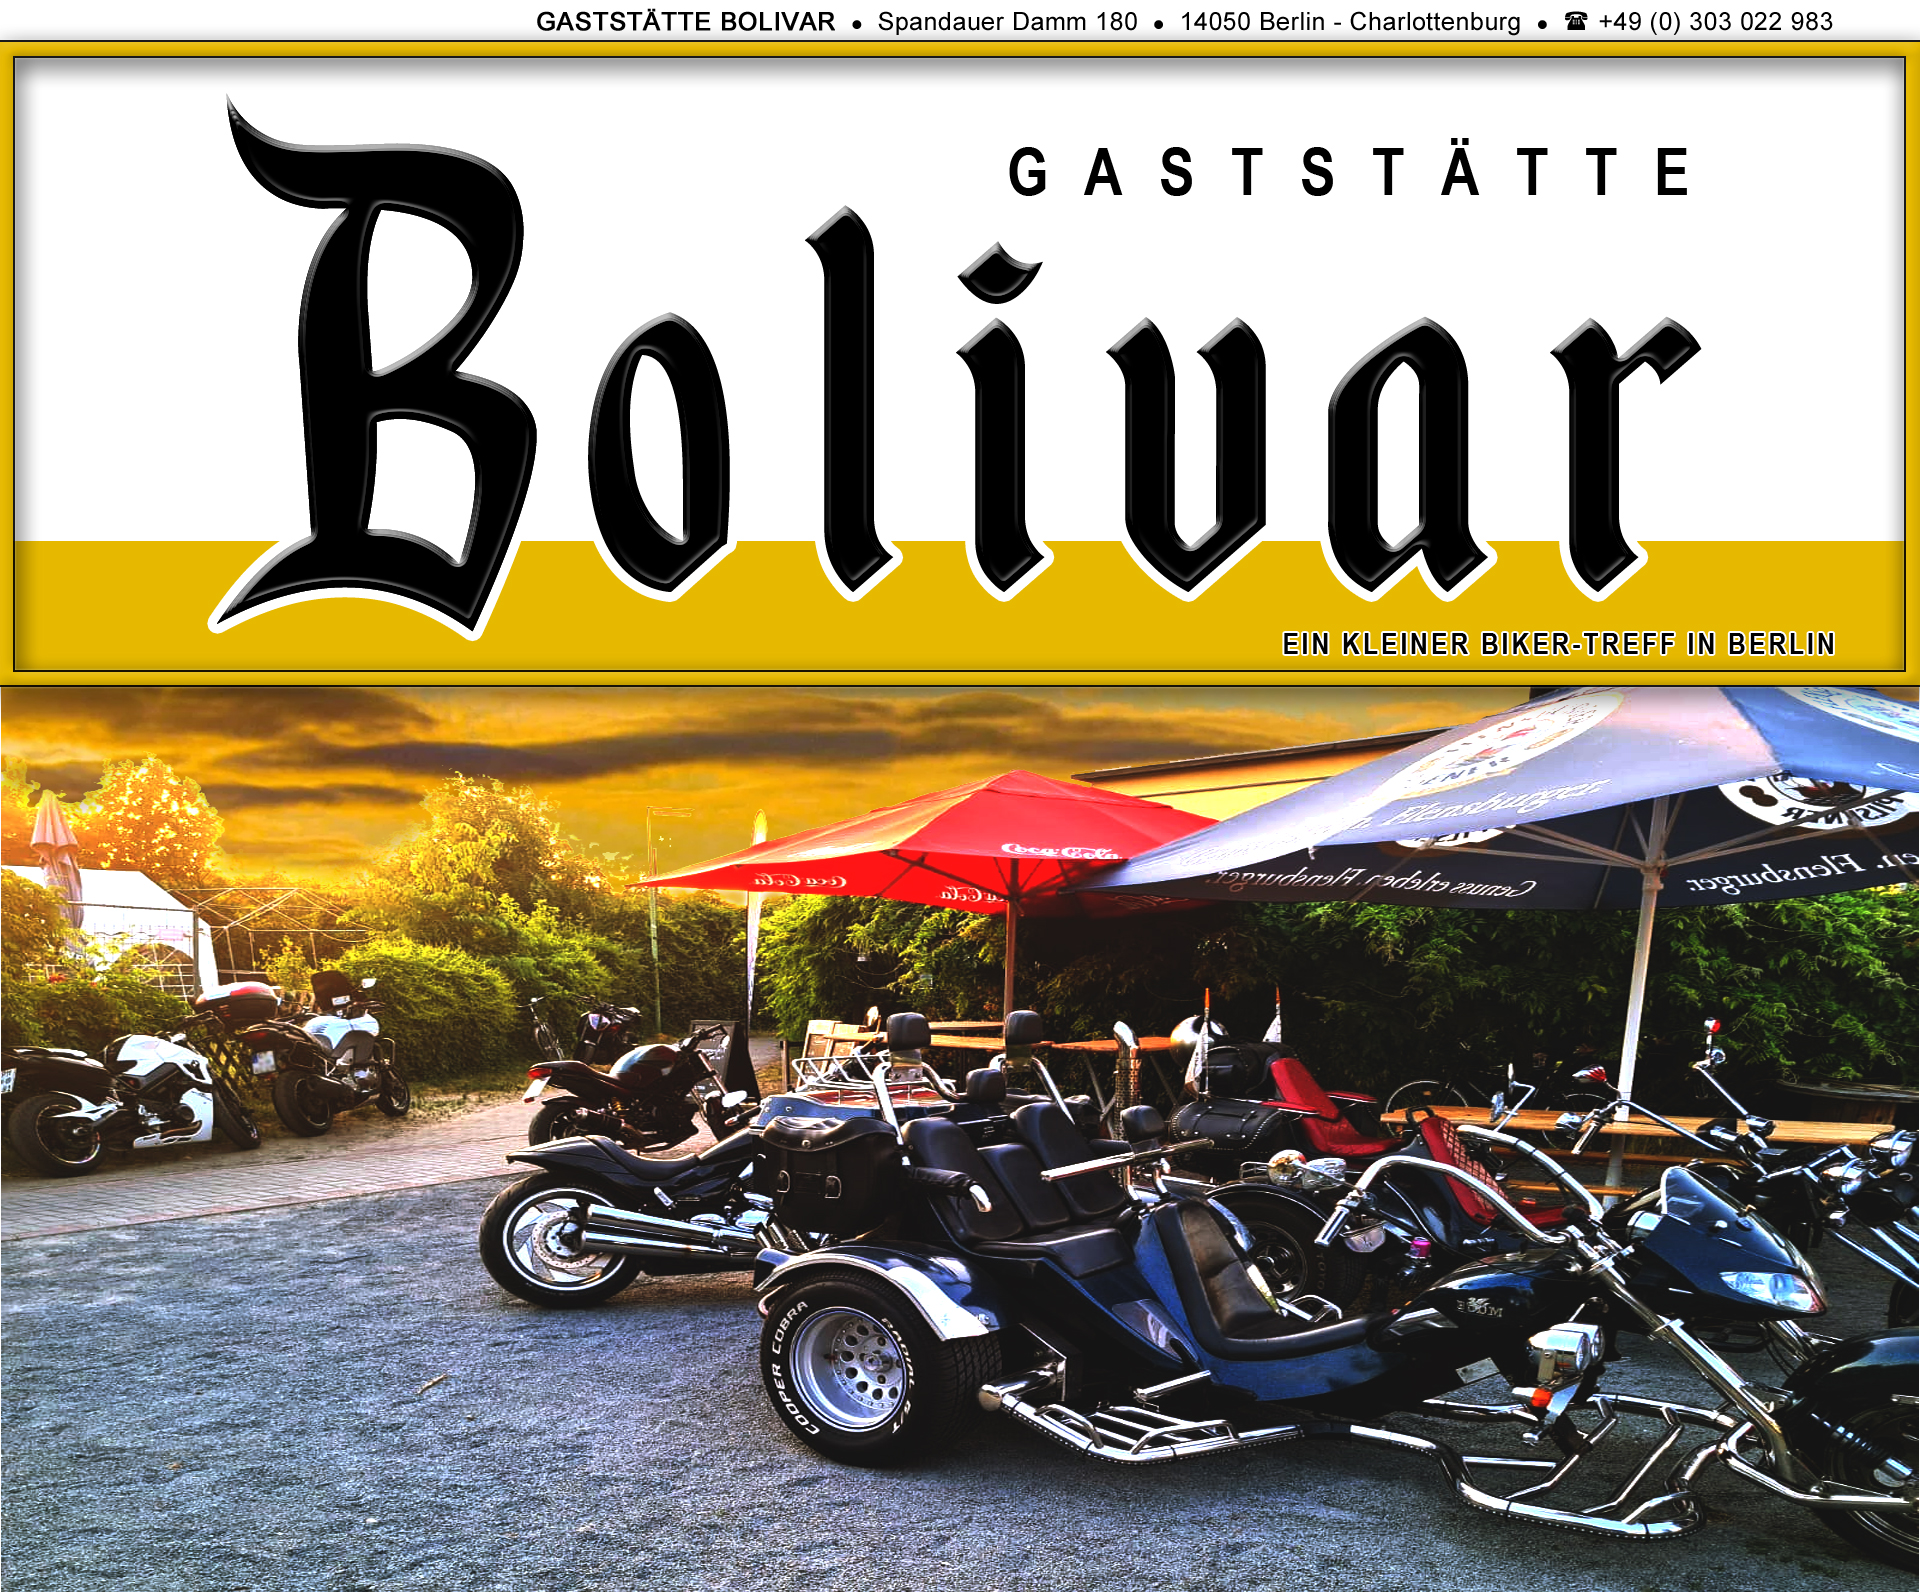 bolivar-berlin-charlottenburg-biker-bikerin-treff-a100-avus-treffpunkt-biergarten-imbiss-gaststaette-lokal-kaffee-kuchen